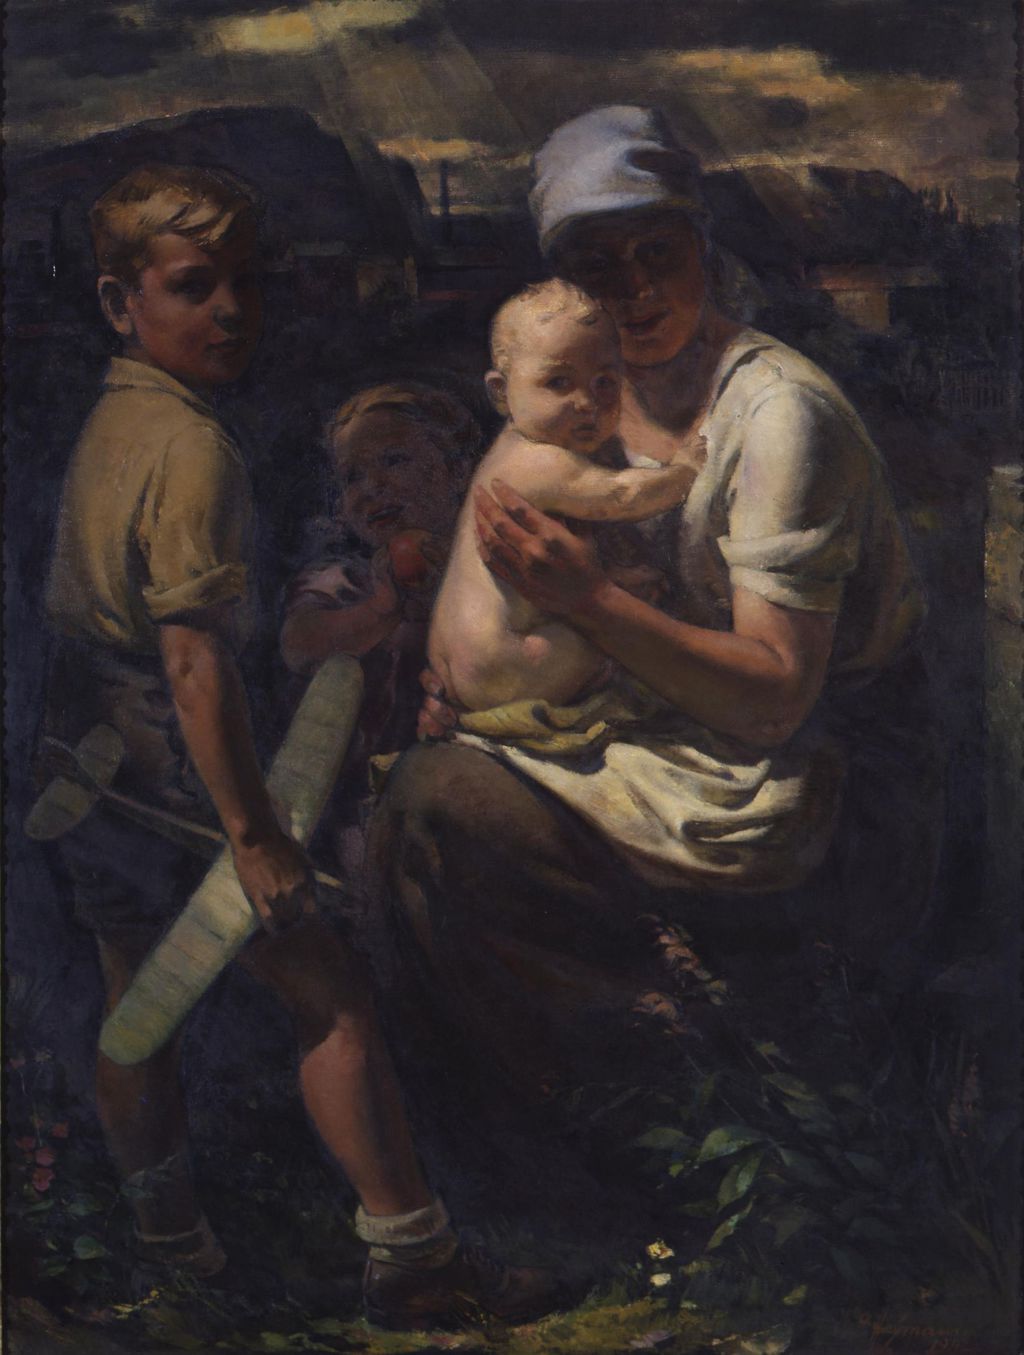 Gemälde: Heymann, Richard "Des Volkes Lebensquell", 1942